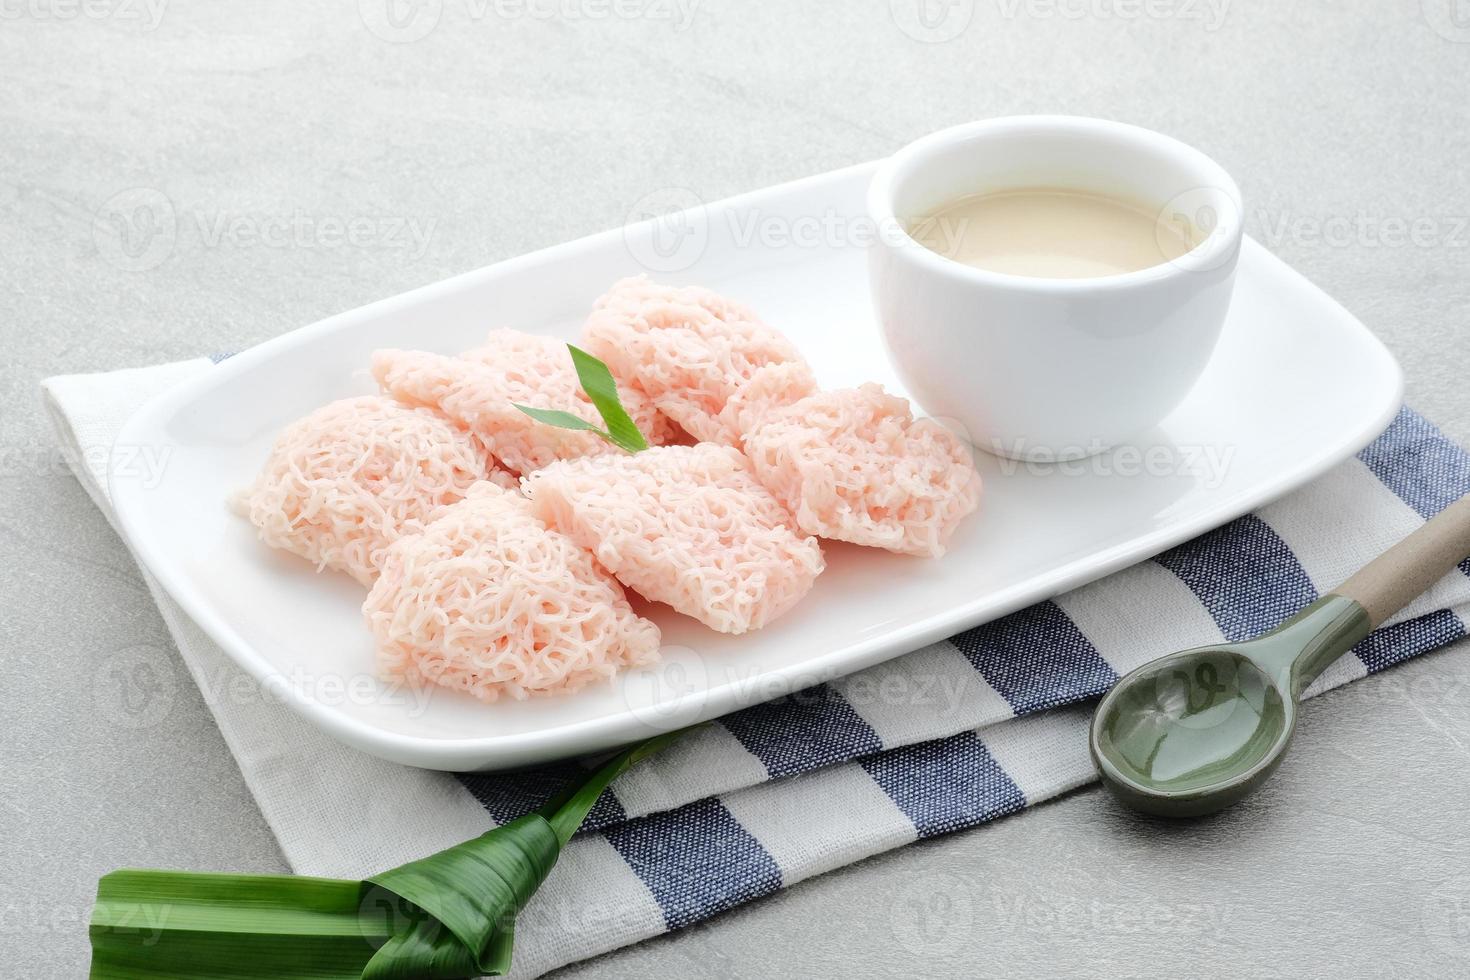 kue putu mayang es un bocadillo tradicional indonesio hecho con hebras de harina de arroz enrolladas en una bola, servida con leche de coco y azúcar de palma. foto